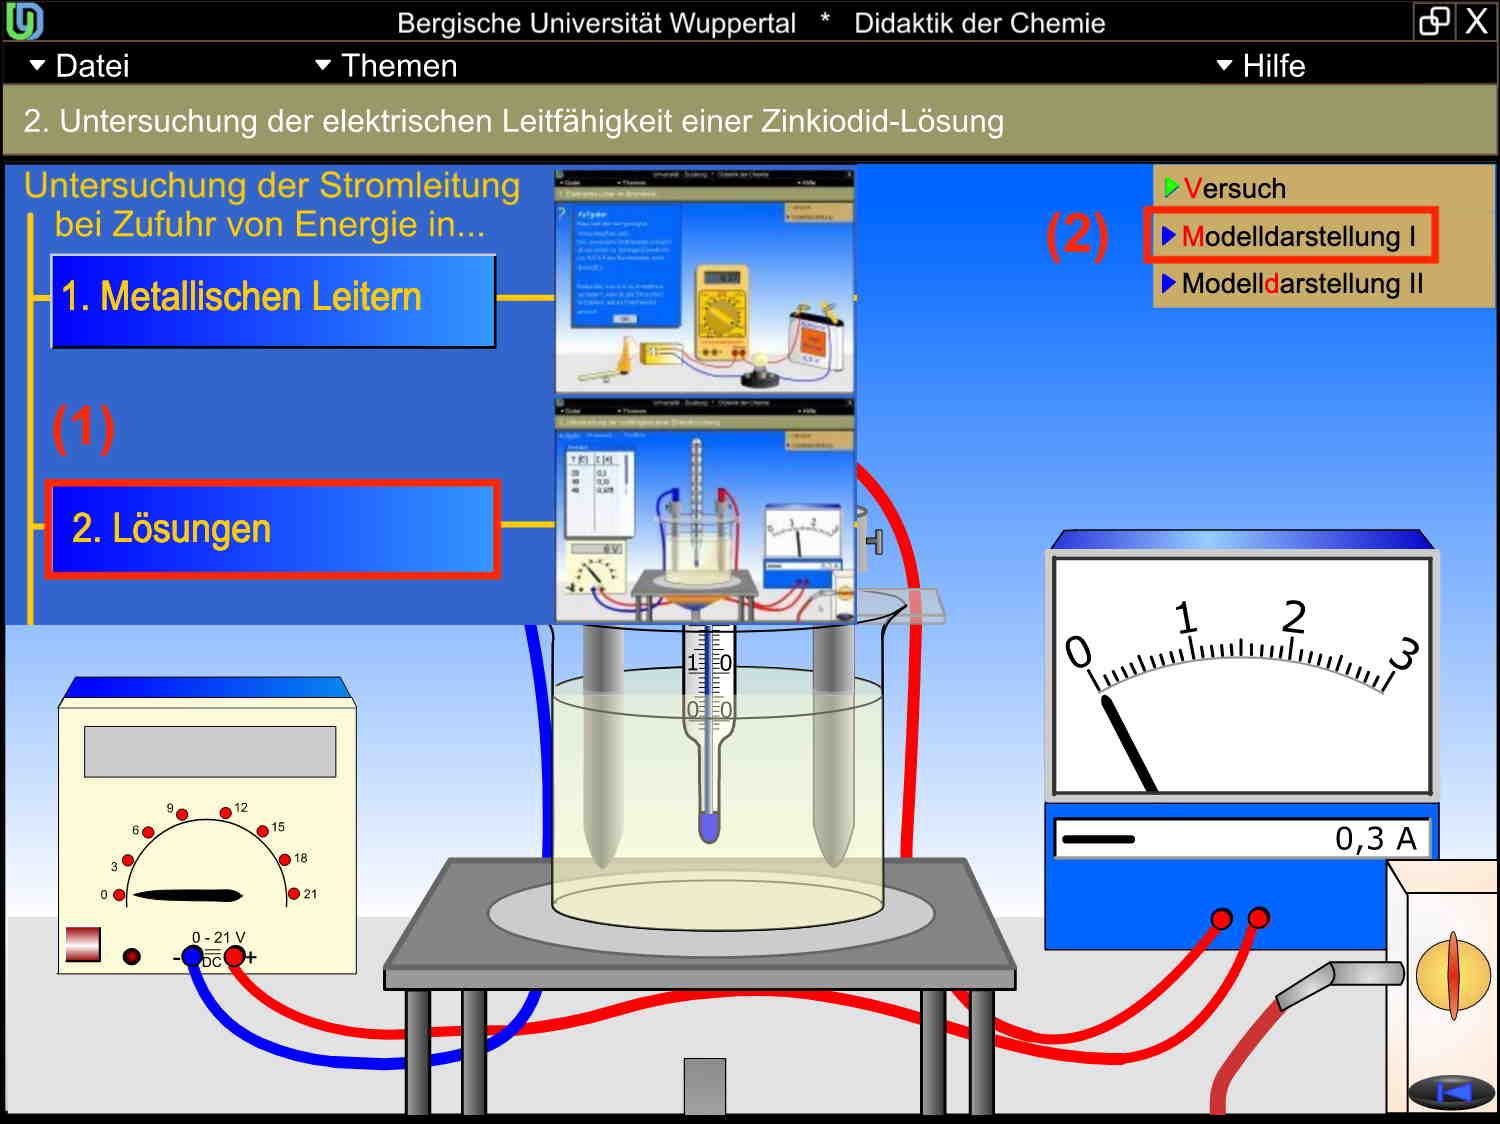 Benutzeroberfläche für die interaktive Animation zur Elektrolyse von Zinkiodid (CHEMIE-INTERAKTIV)